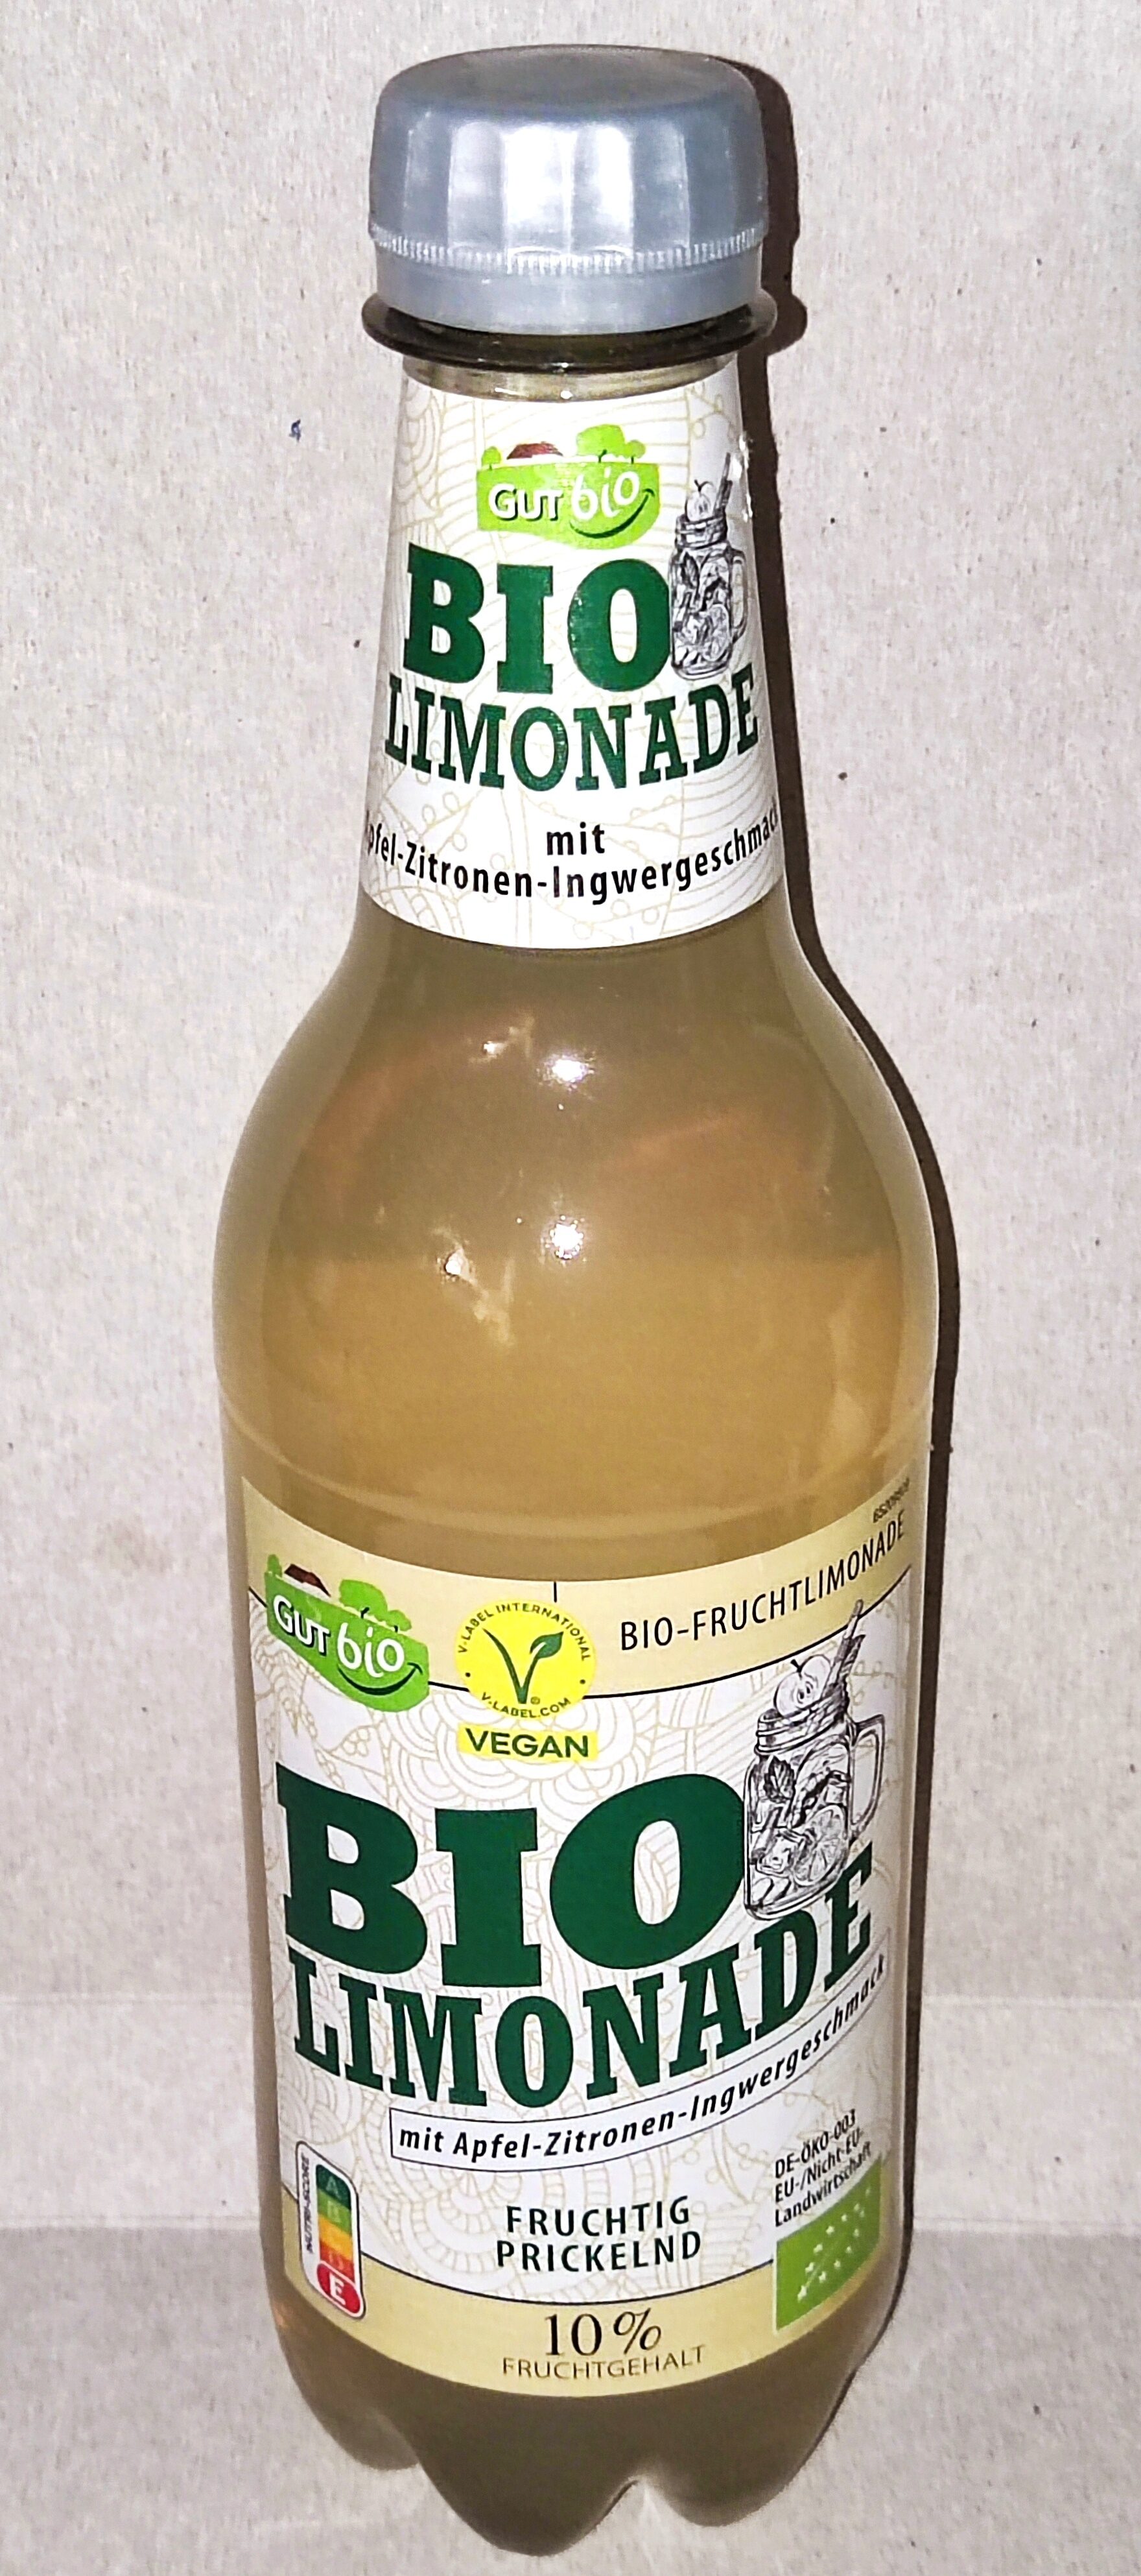 Bio-Limonade - Apfel-Zitronen-Ingwergeschmack - Produkt